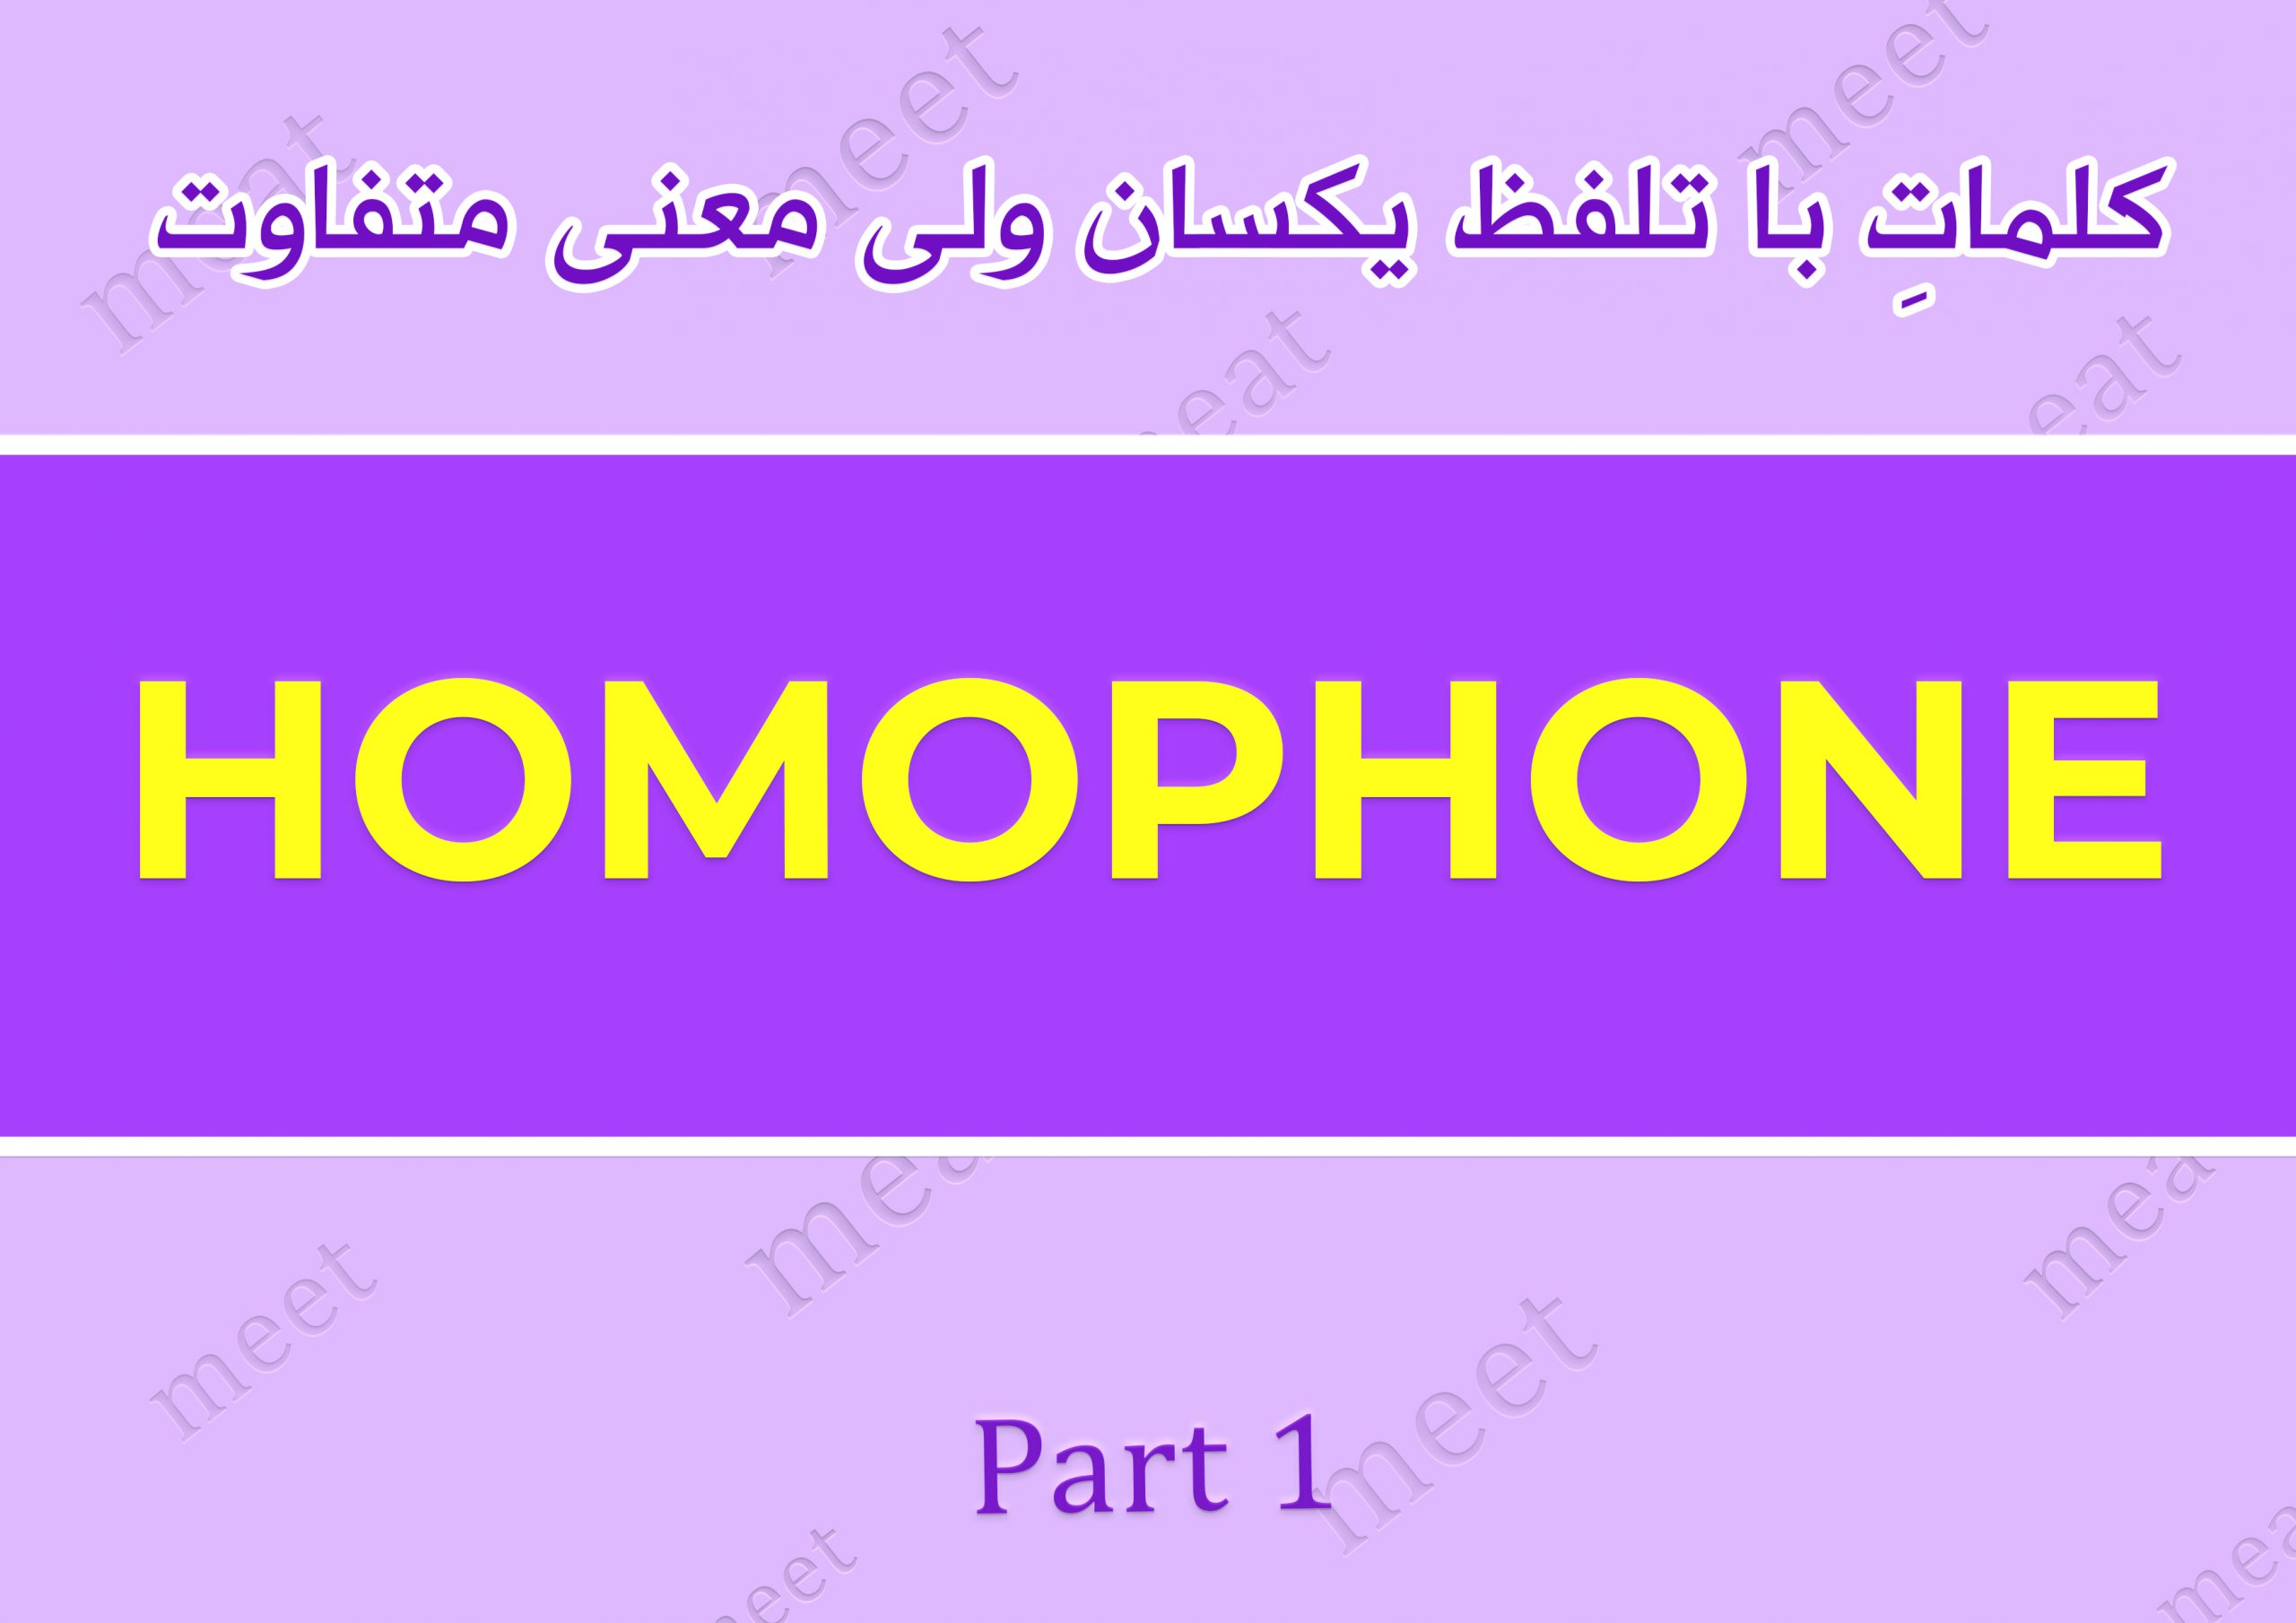 کلمات انگلیسی با تلفظ یکسان و معنی متفاوت | homophones هوموفون چیست و چه کاربردی دارد؟ فرق meet و meat